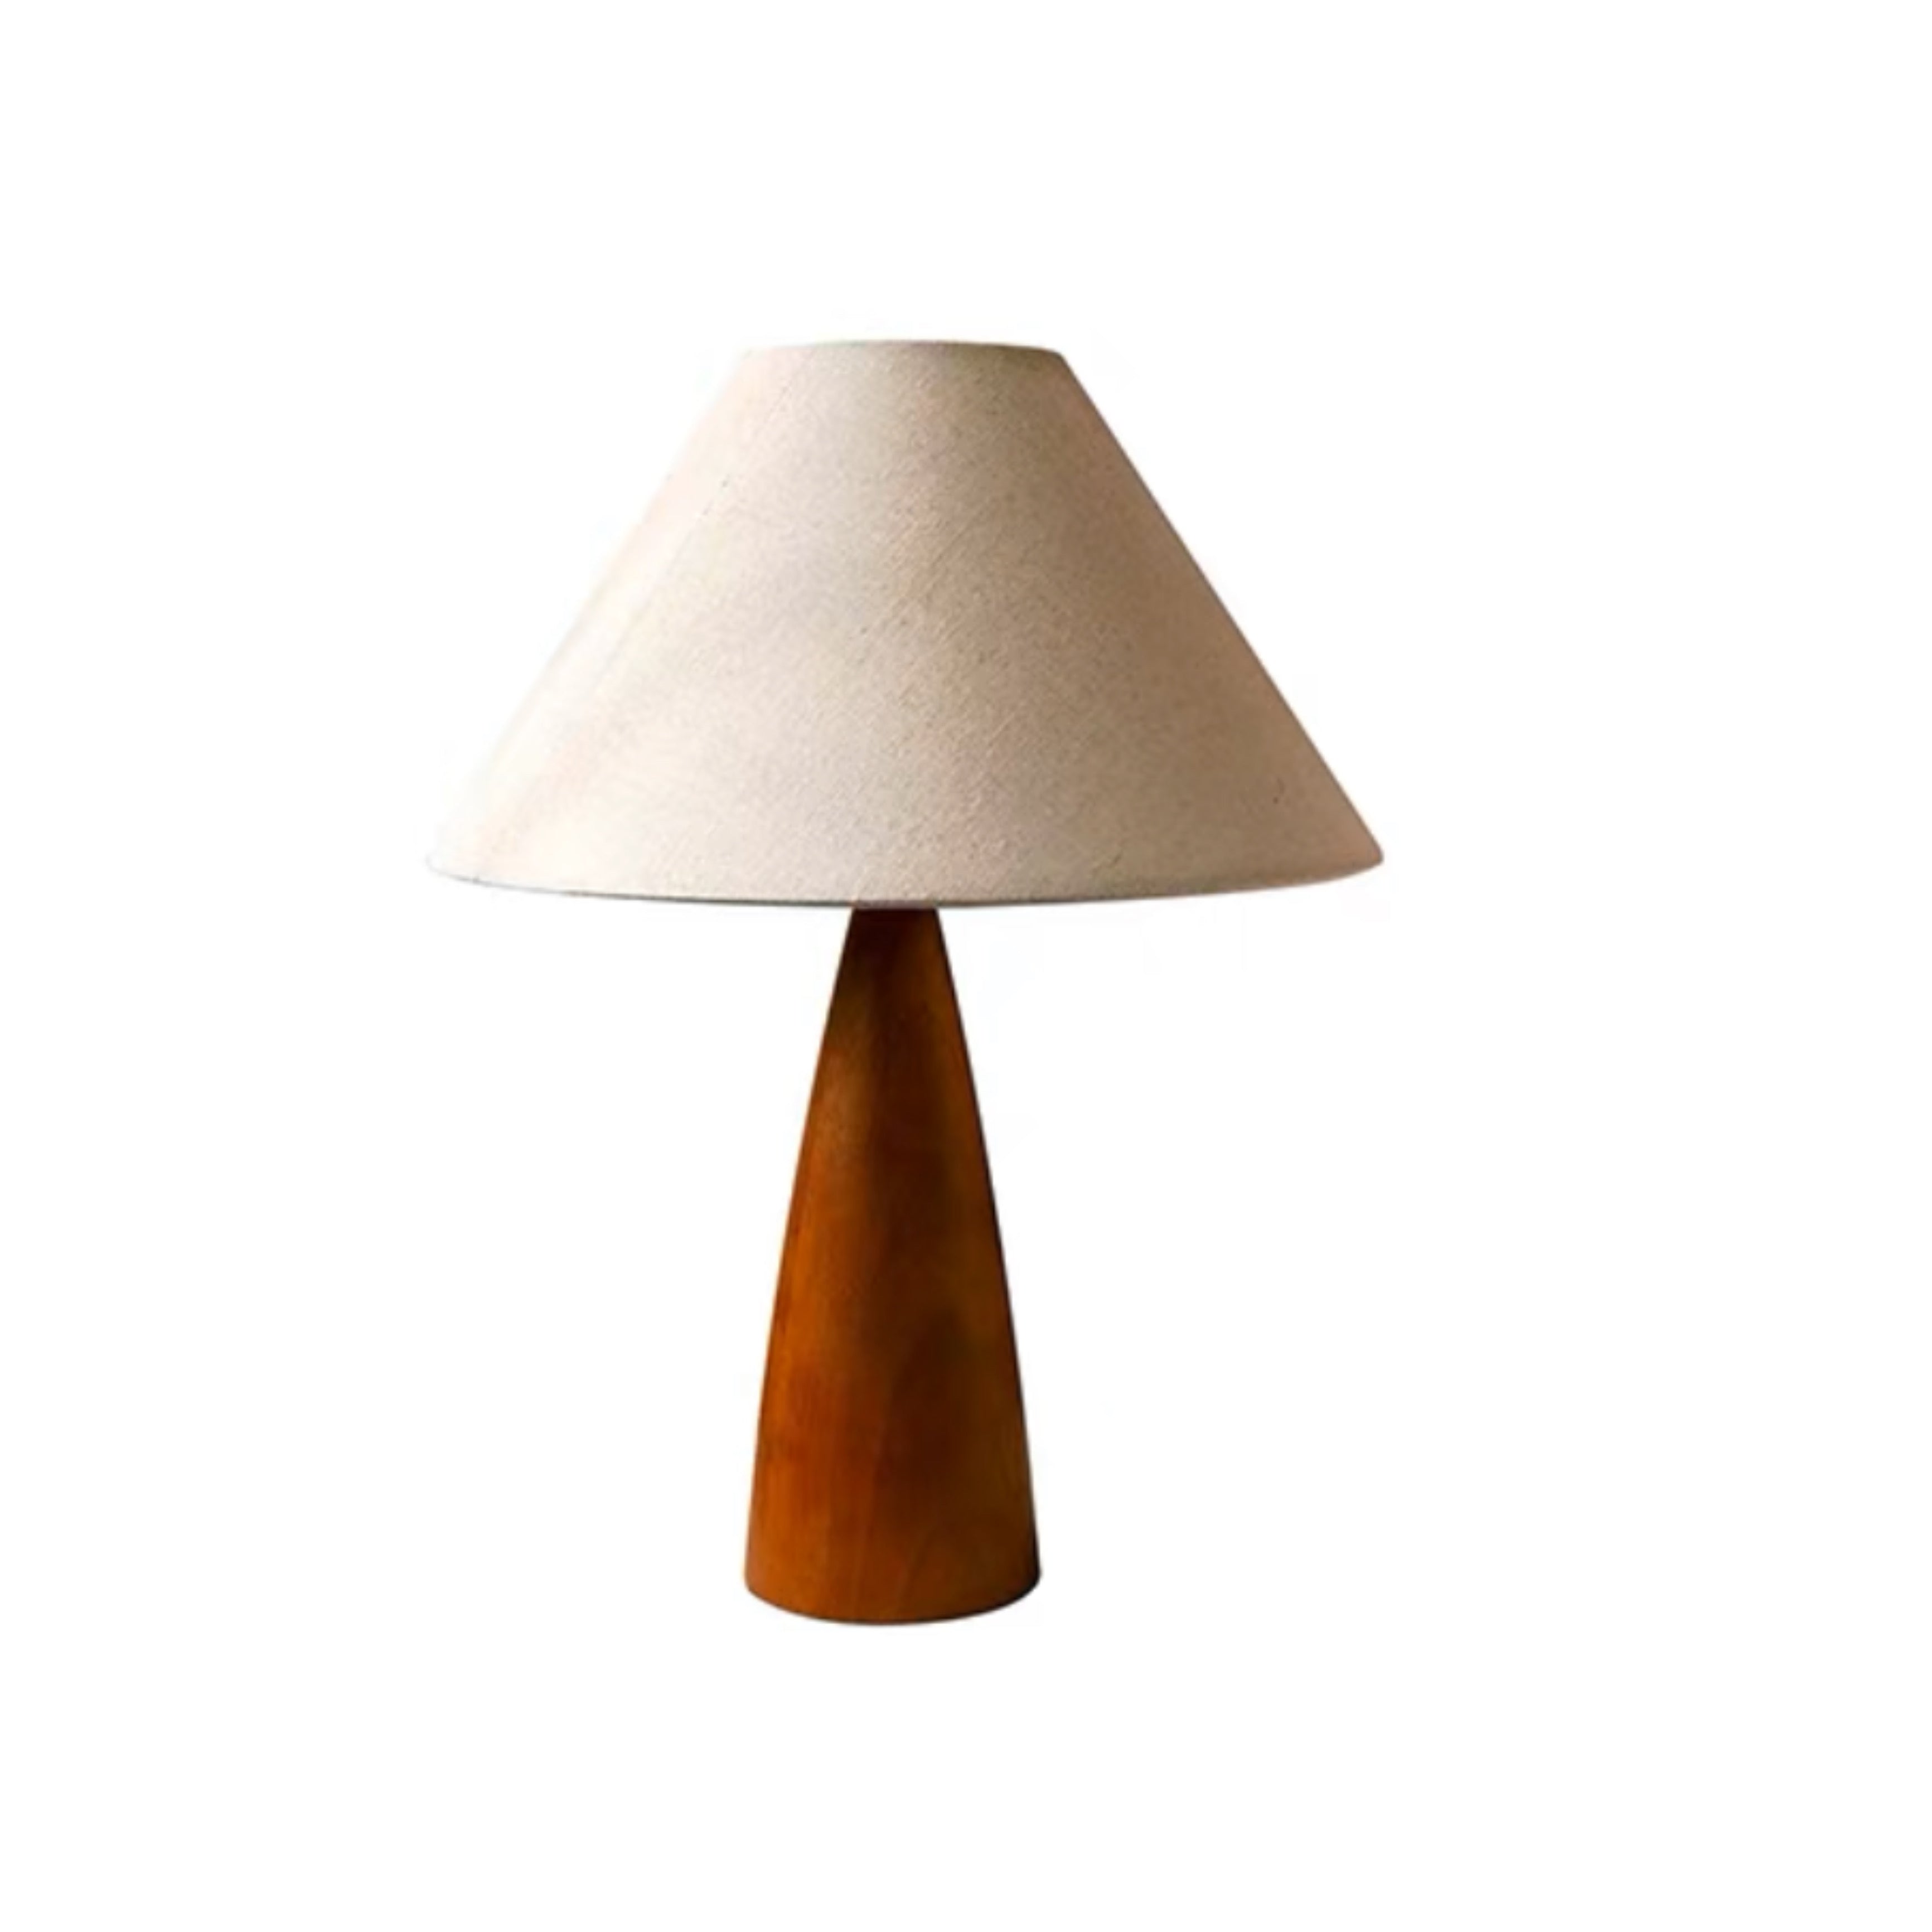 Casquette lamp